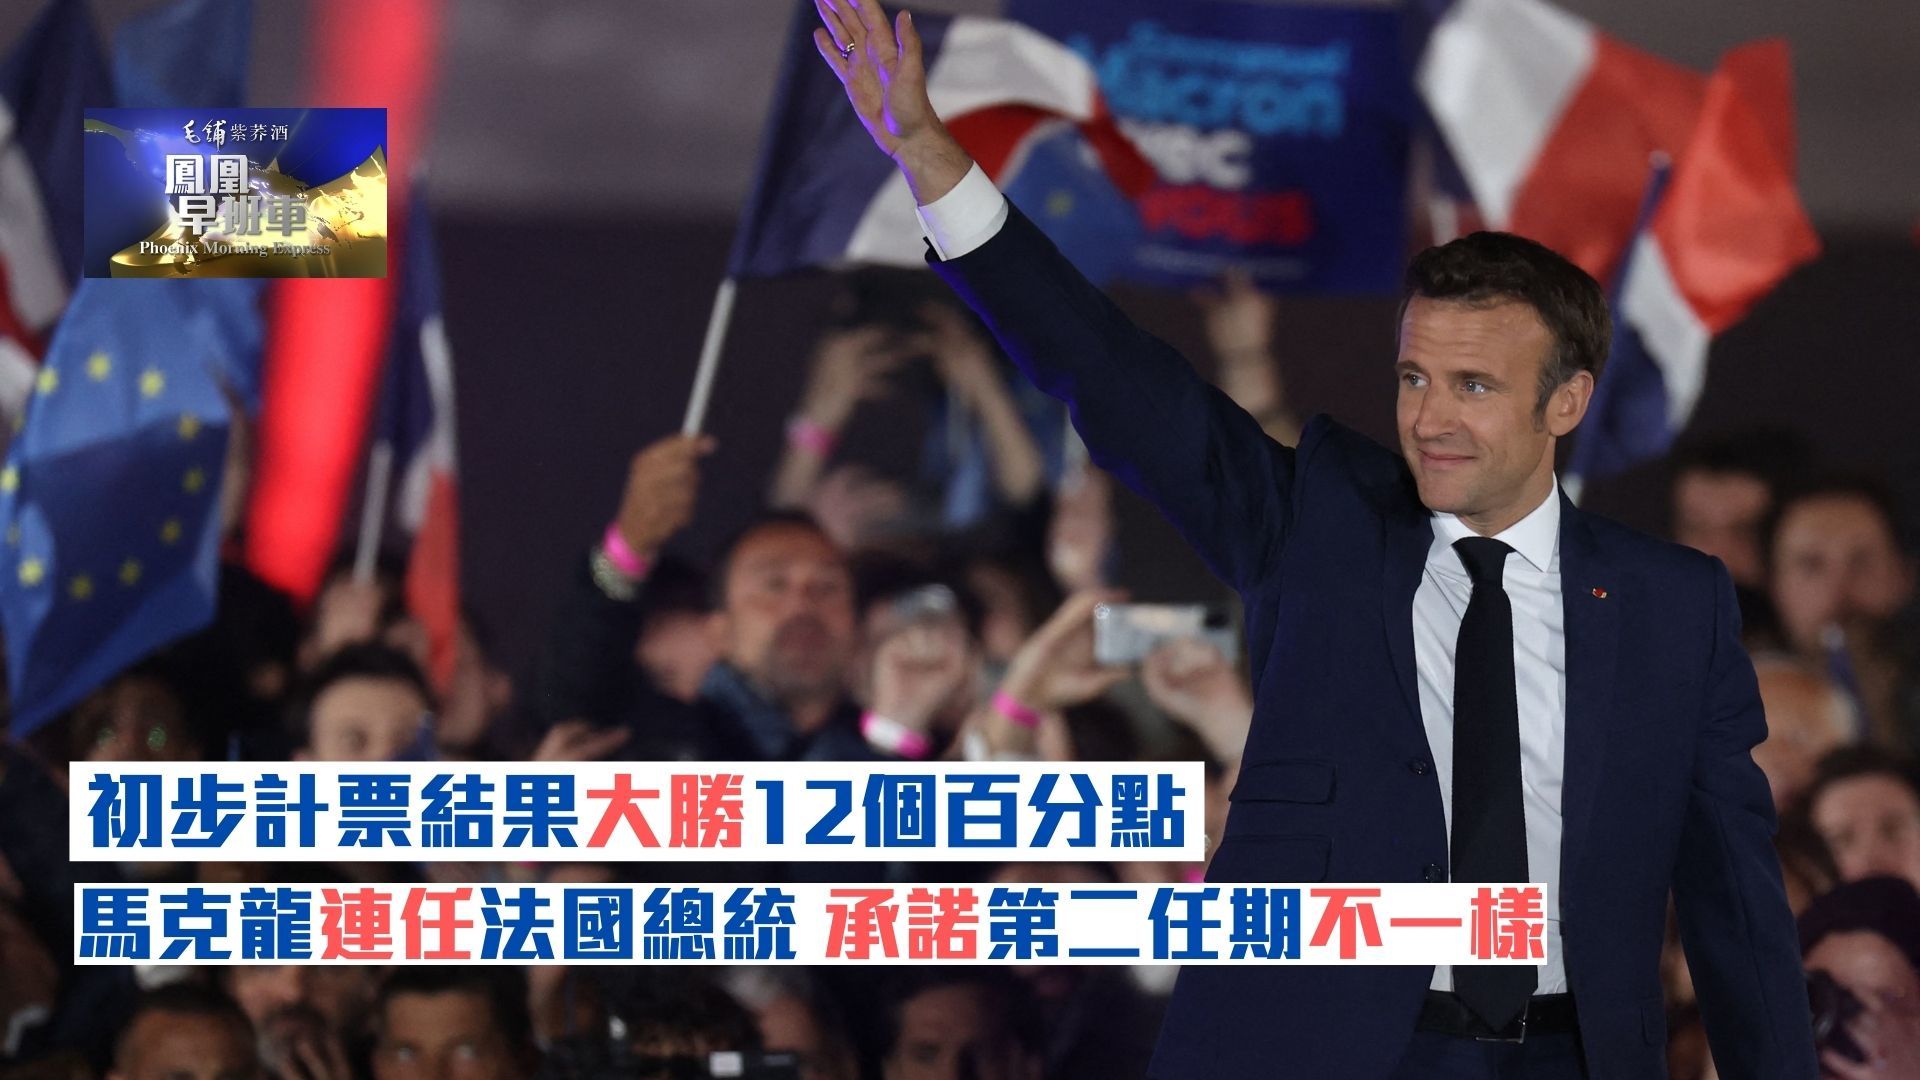 初步计票结果大胜12个百分点 马克龙连任法国总统 承诺第二任期不一样